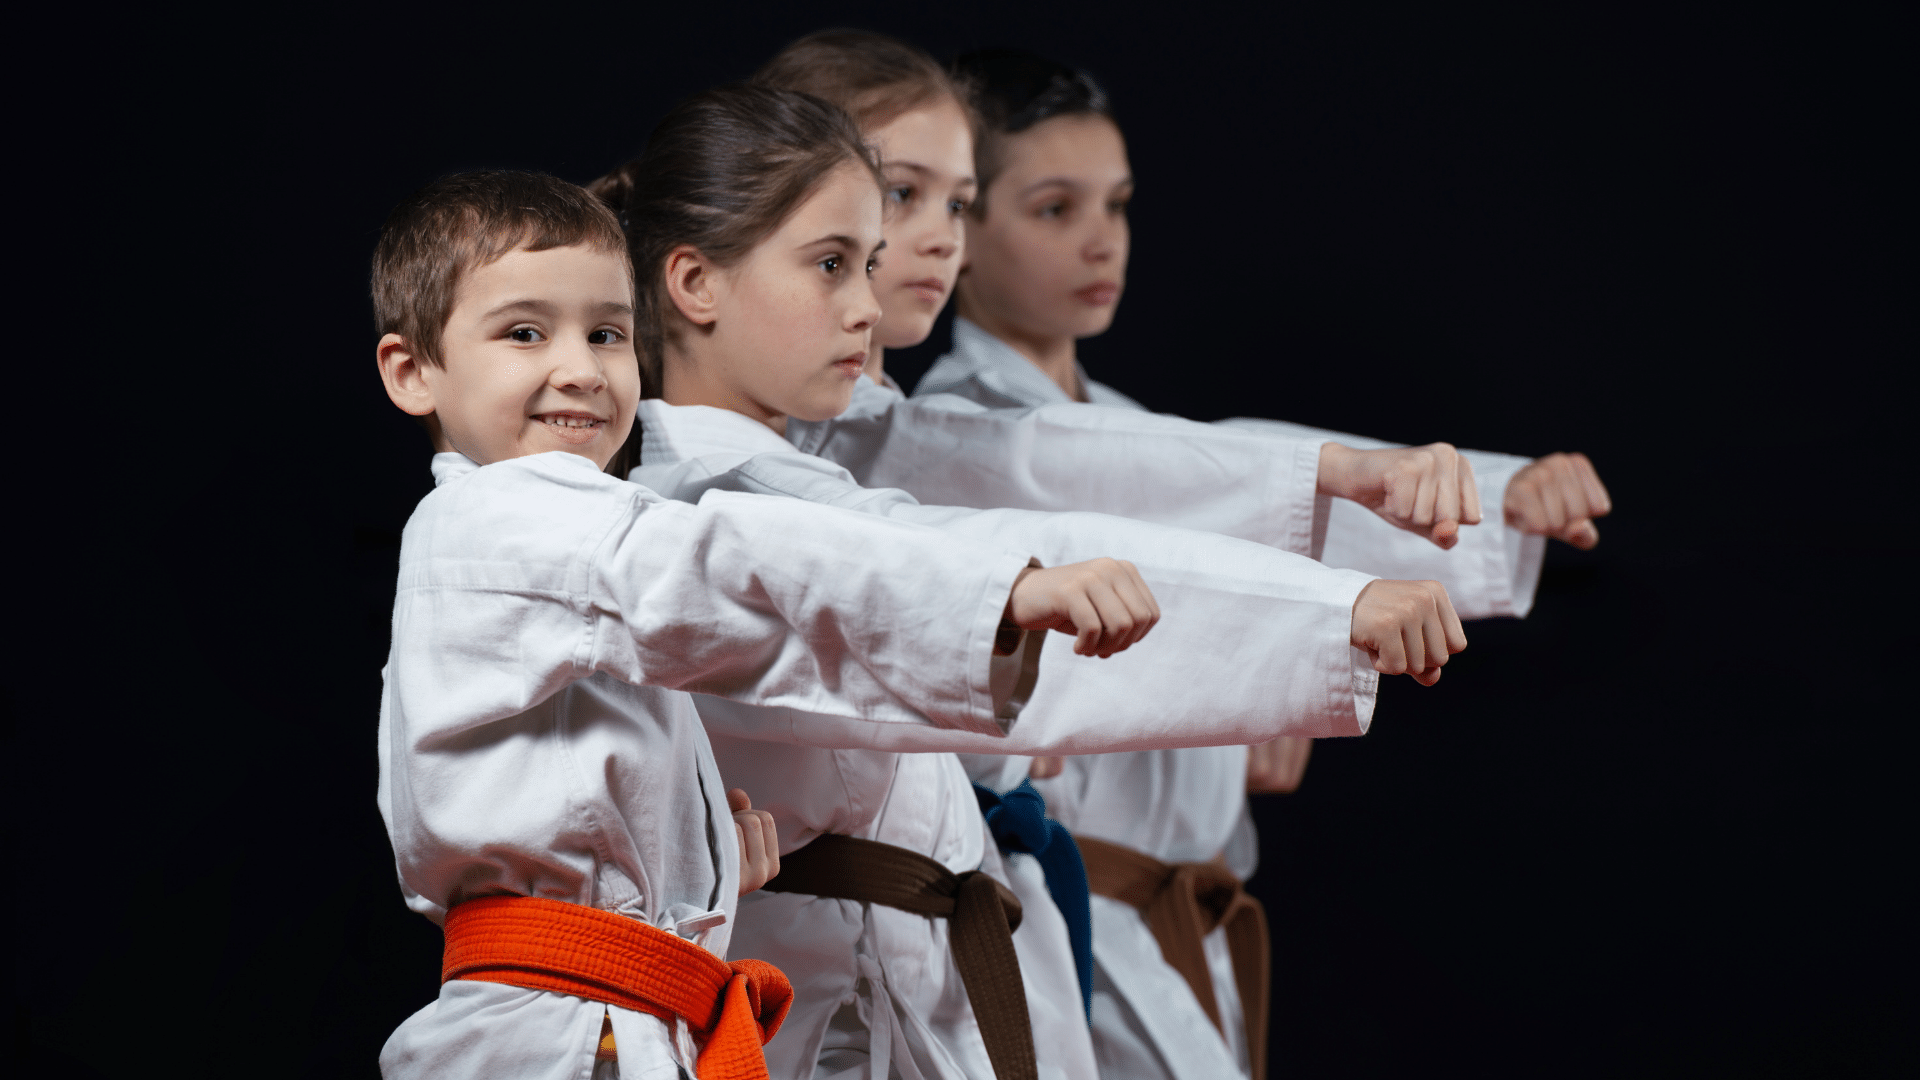 How Much Does Karate For Kids Near Me Cost? - granite bay jiu-jitsu